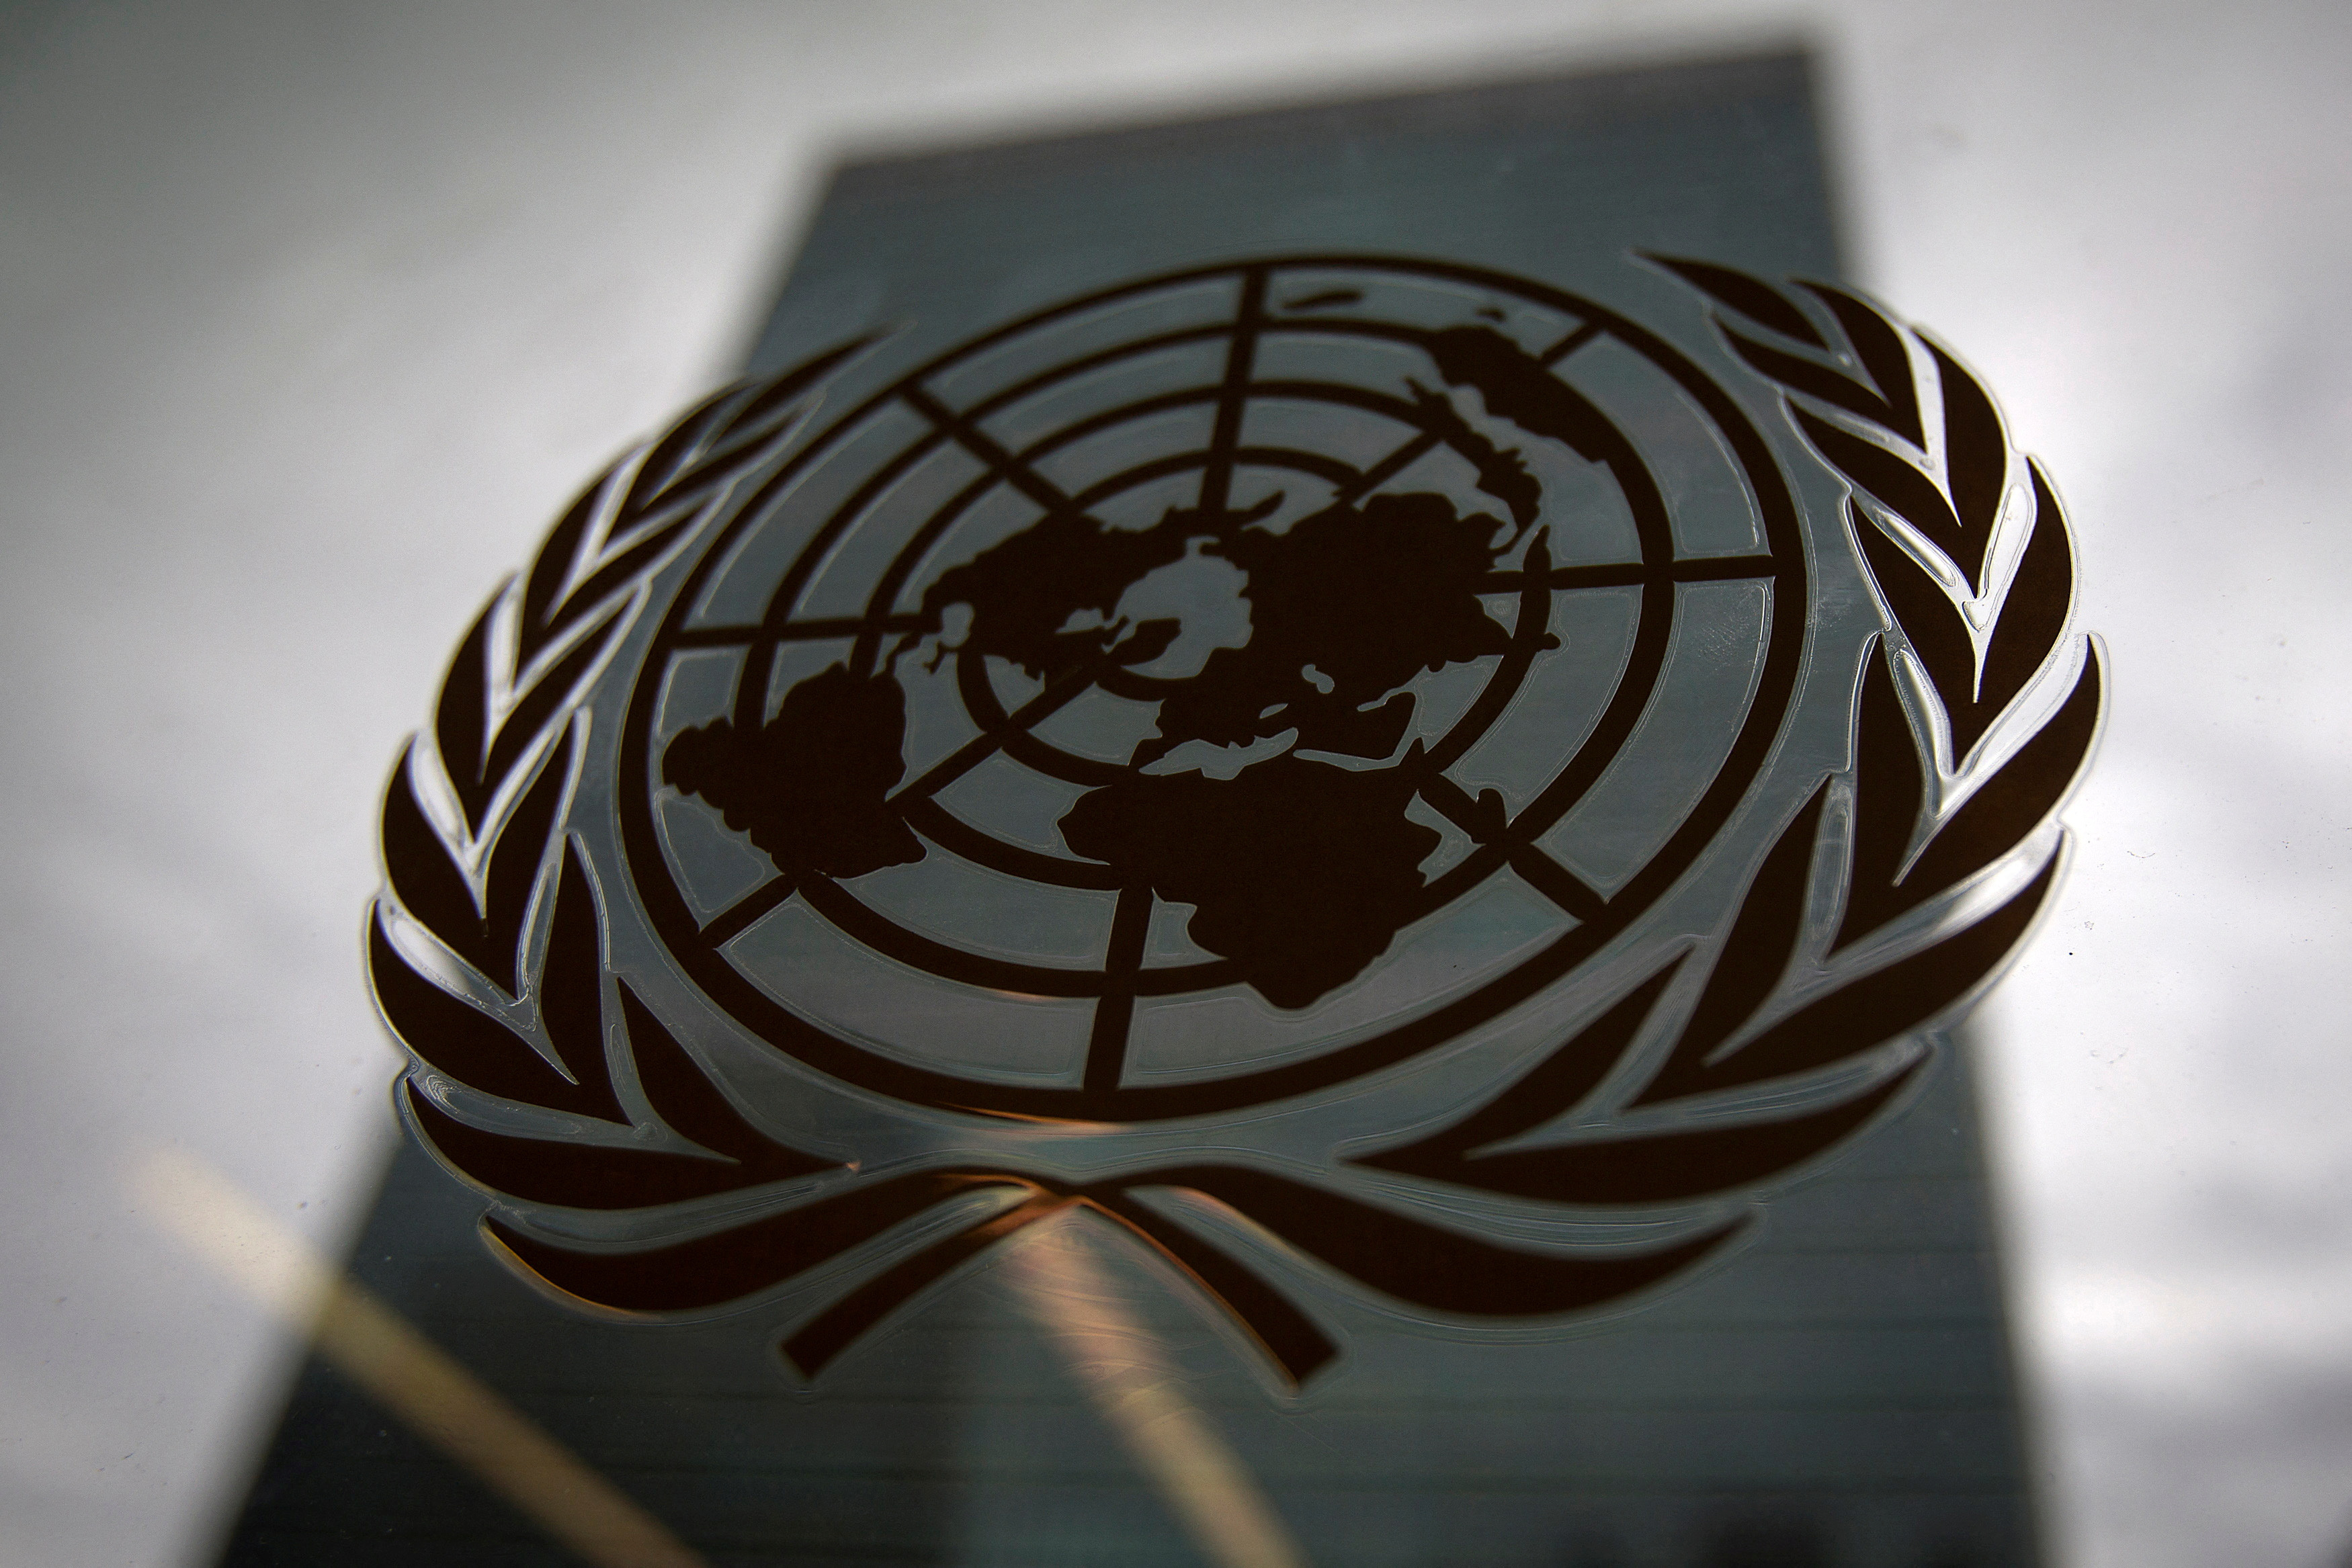 Budynek siedziby Organizacji Narodów Zjednoczonych jest pokazany przez okno z logo ONZ na pierwszym planie w dzielnicy Manhattan w Nowym Jorku